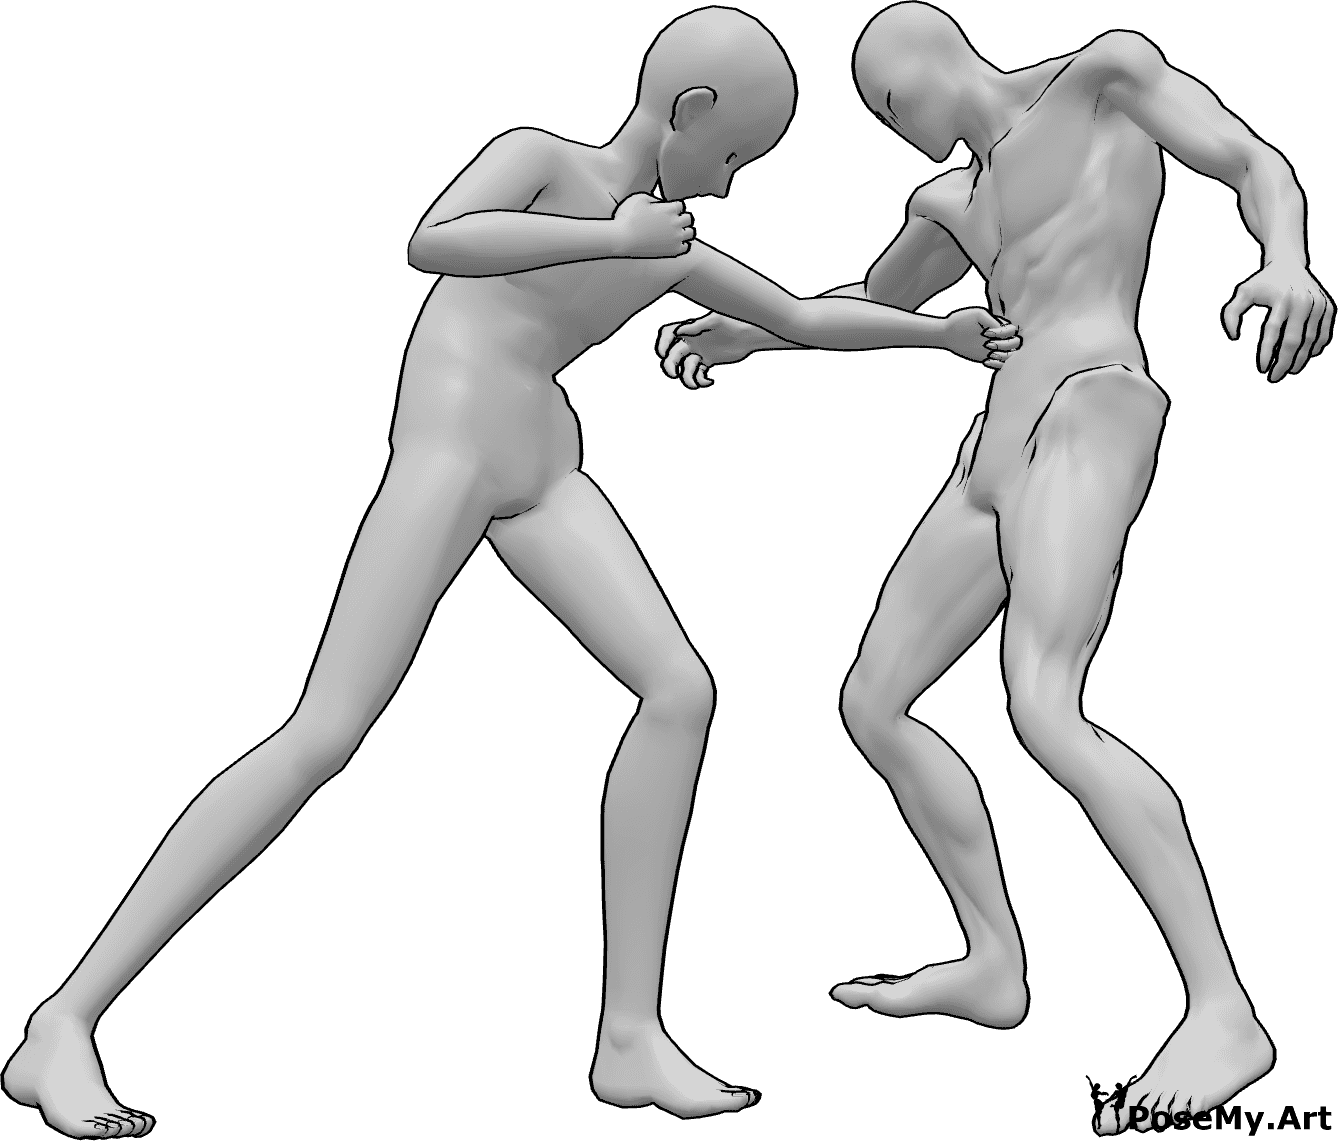 Referência de poses- Pose de soco no estômago de anime - O homem anime está a dar um murro no estômago do inimigo com a sua mão esquerda